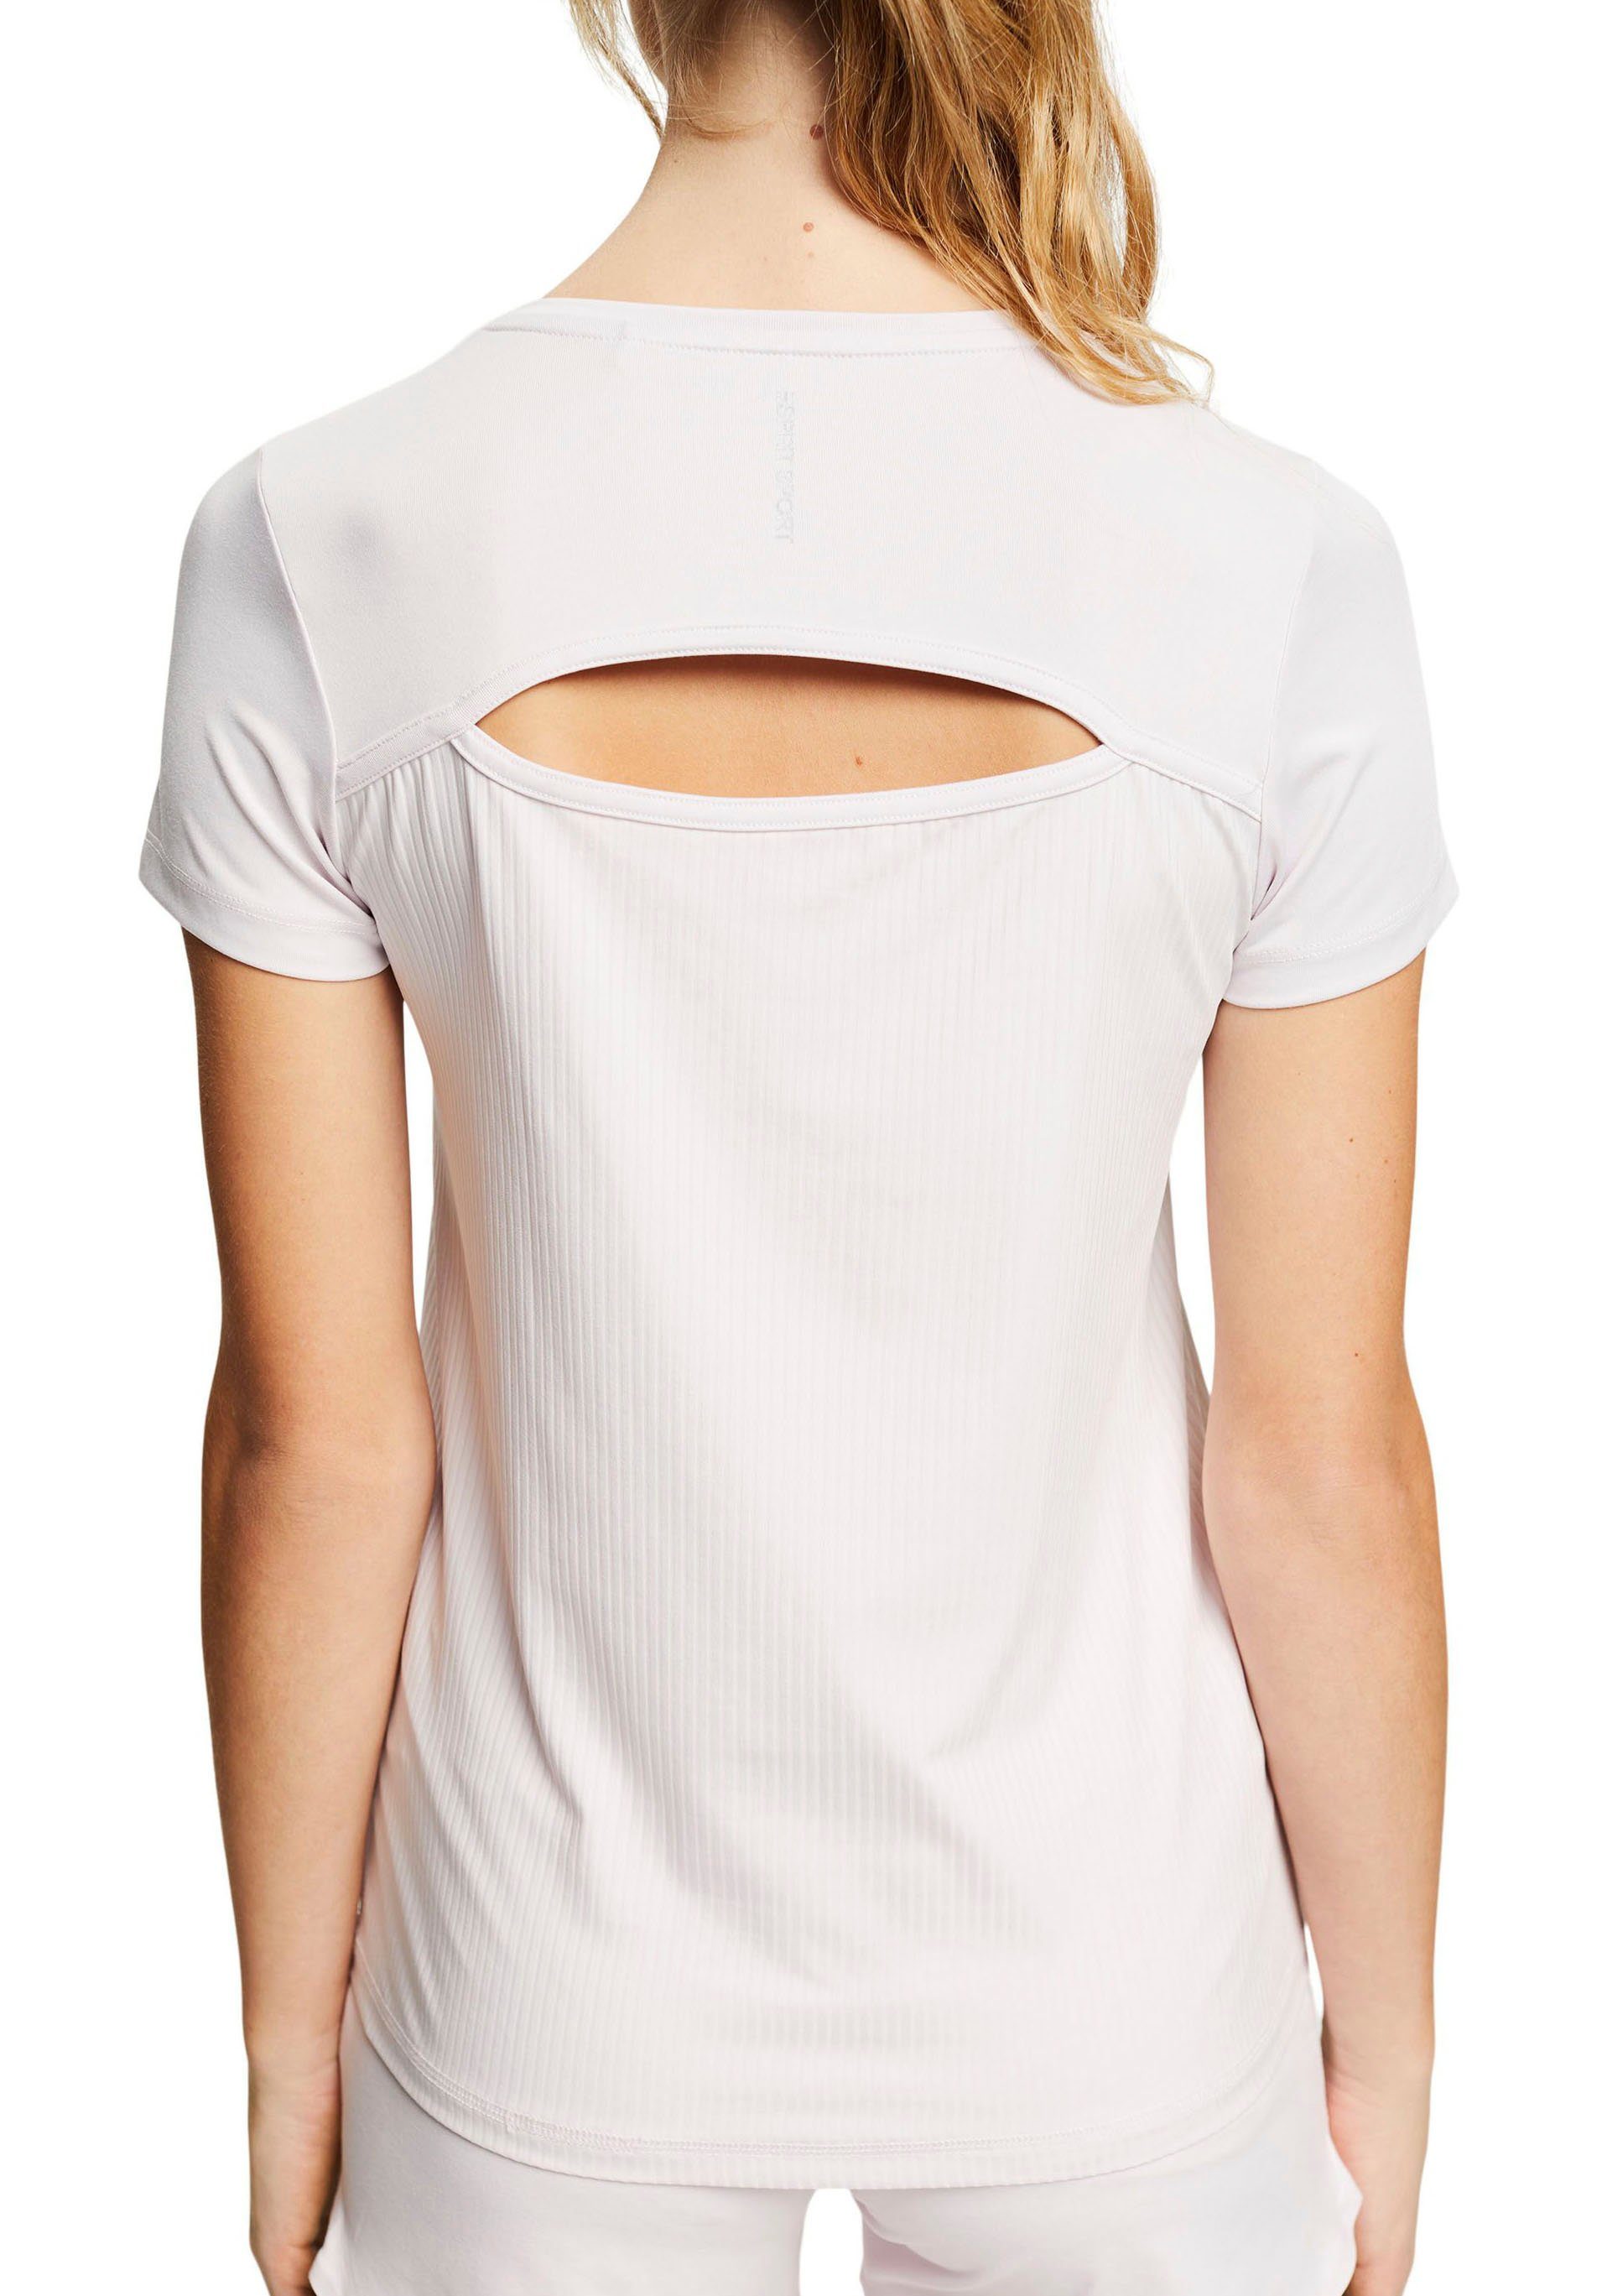 Damen Shirts esprit sports Kurzarmshirt mit Cut-Out am oberen Rücken